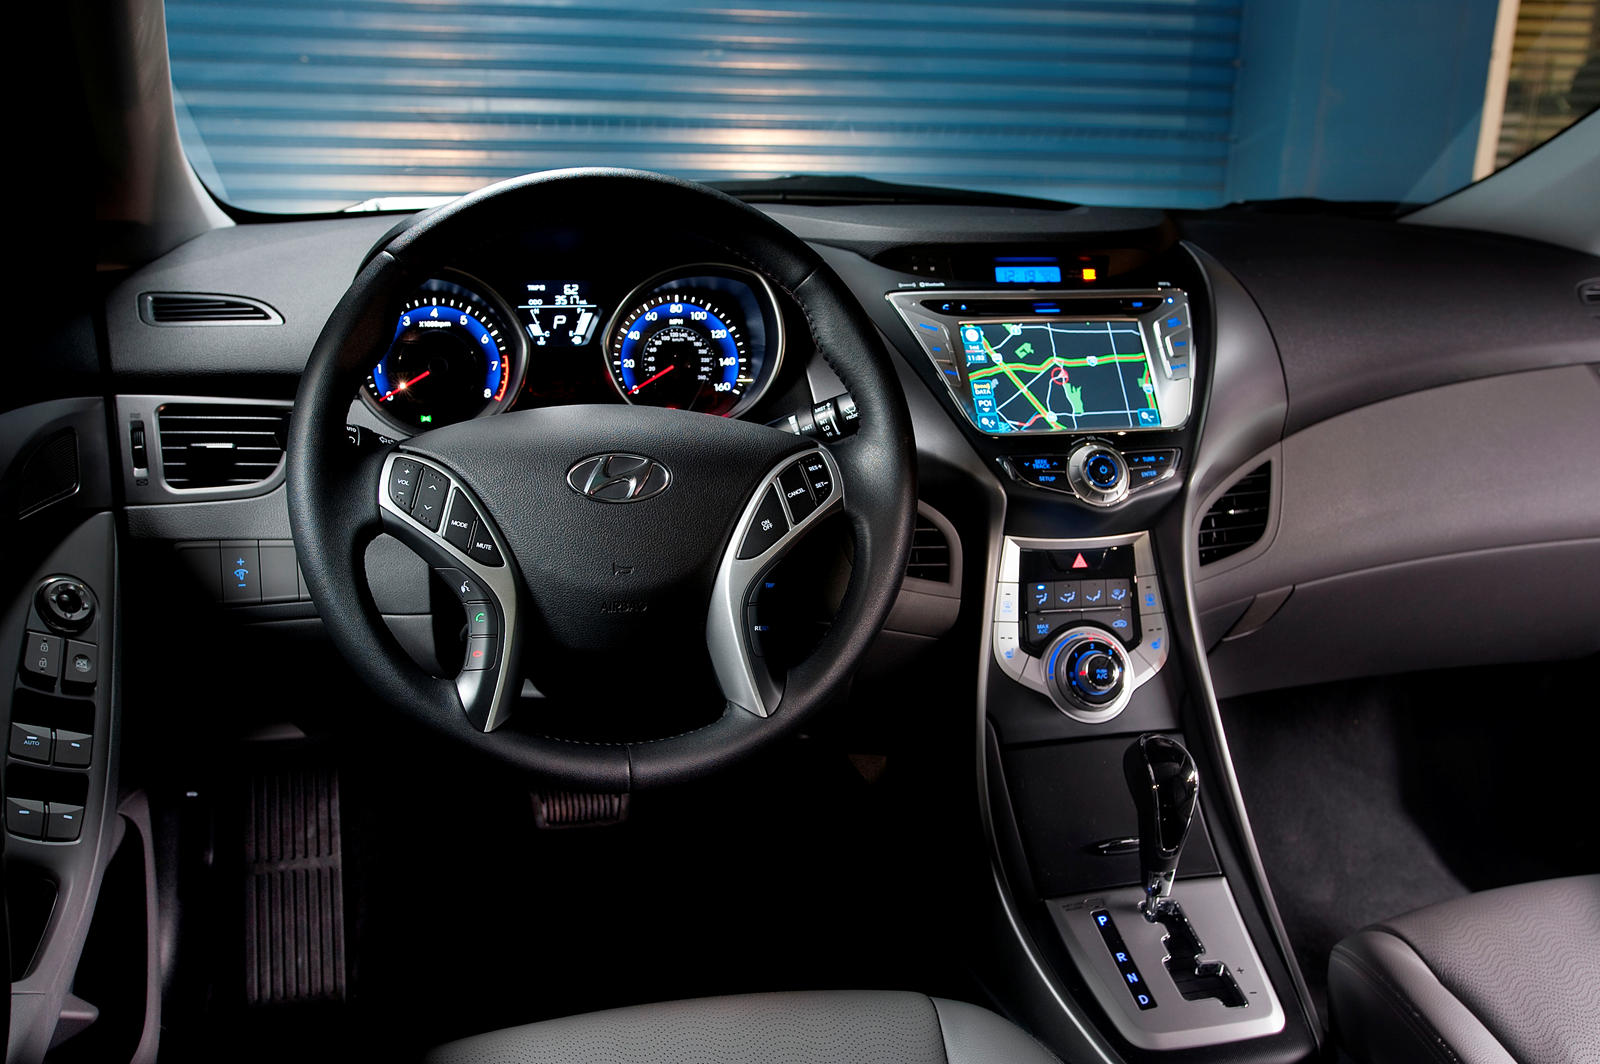 2011 Hyundai Elantra Interior Photos | CarBuzz